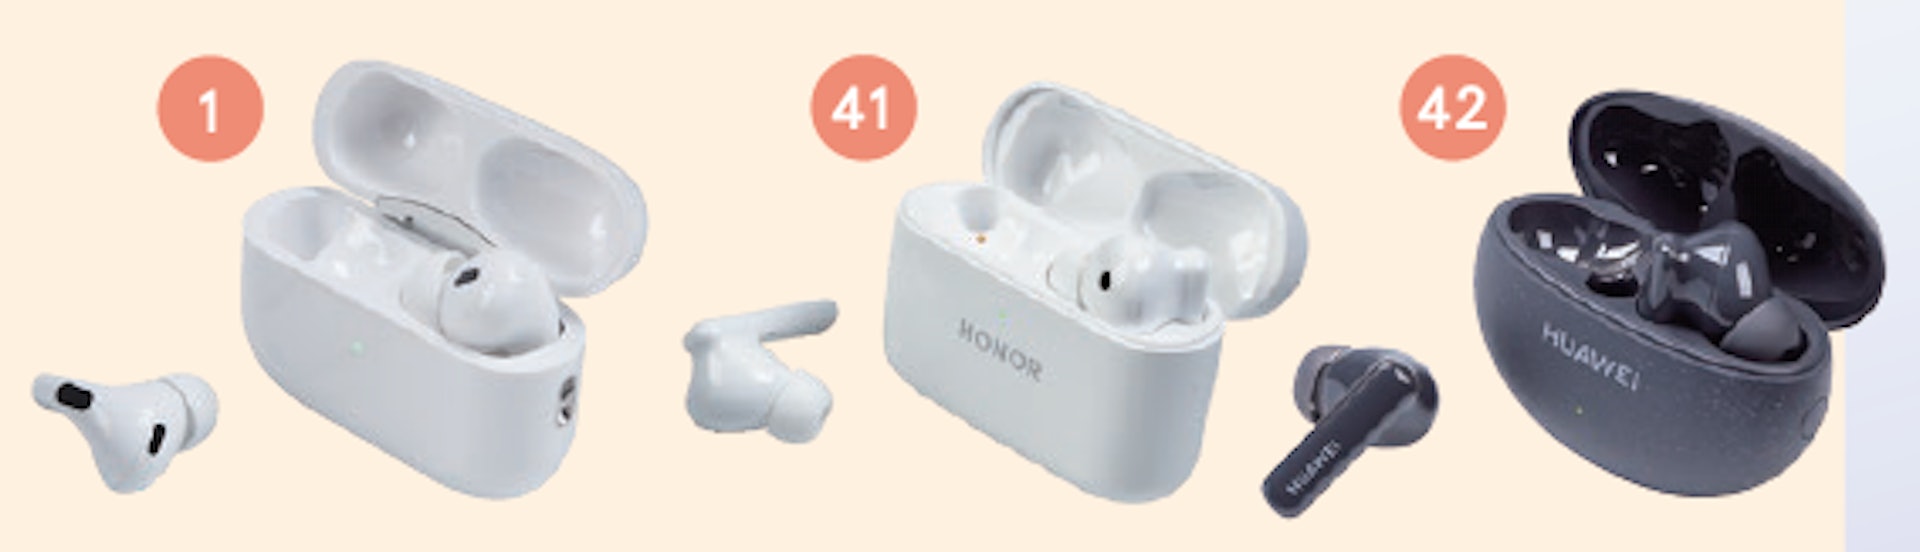 消委會推薦主動式降噪型號包括：#1的Apple  Airpods Pro 2、#41的榮耀Honor Earbuds 2 Lite 及 #42的華為Huawei Freebuds 5i。（消委會提供）